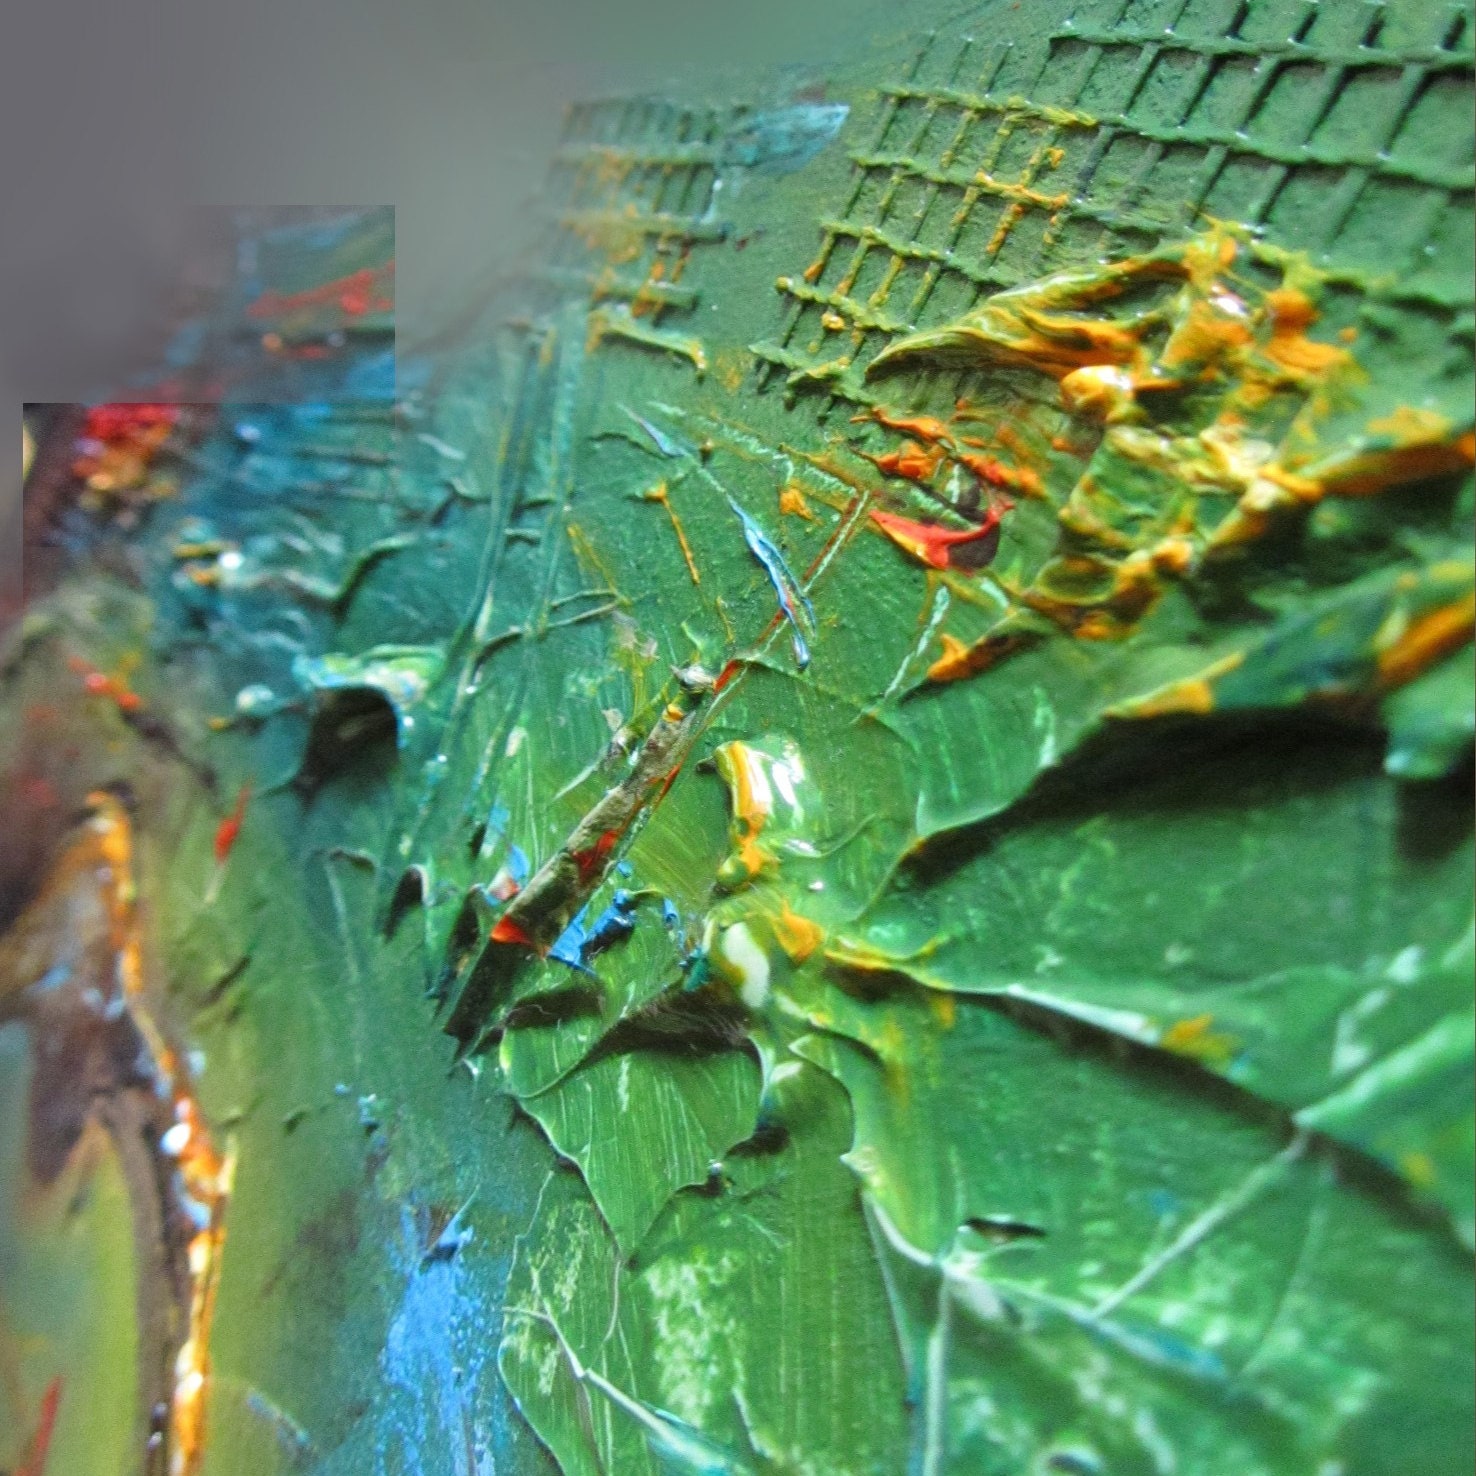 Fond Abstrait De Peinture à L'huile Couleur D'or Vert Et Bleu Du Blanc  Beaux-arts Créatifs Naturels De Luxe D'or De L'océan Et Sc Image stock -  Image du créateur, acrylique: 199543639